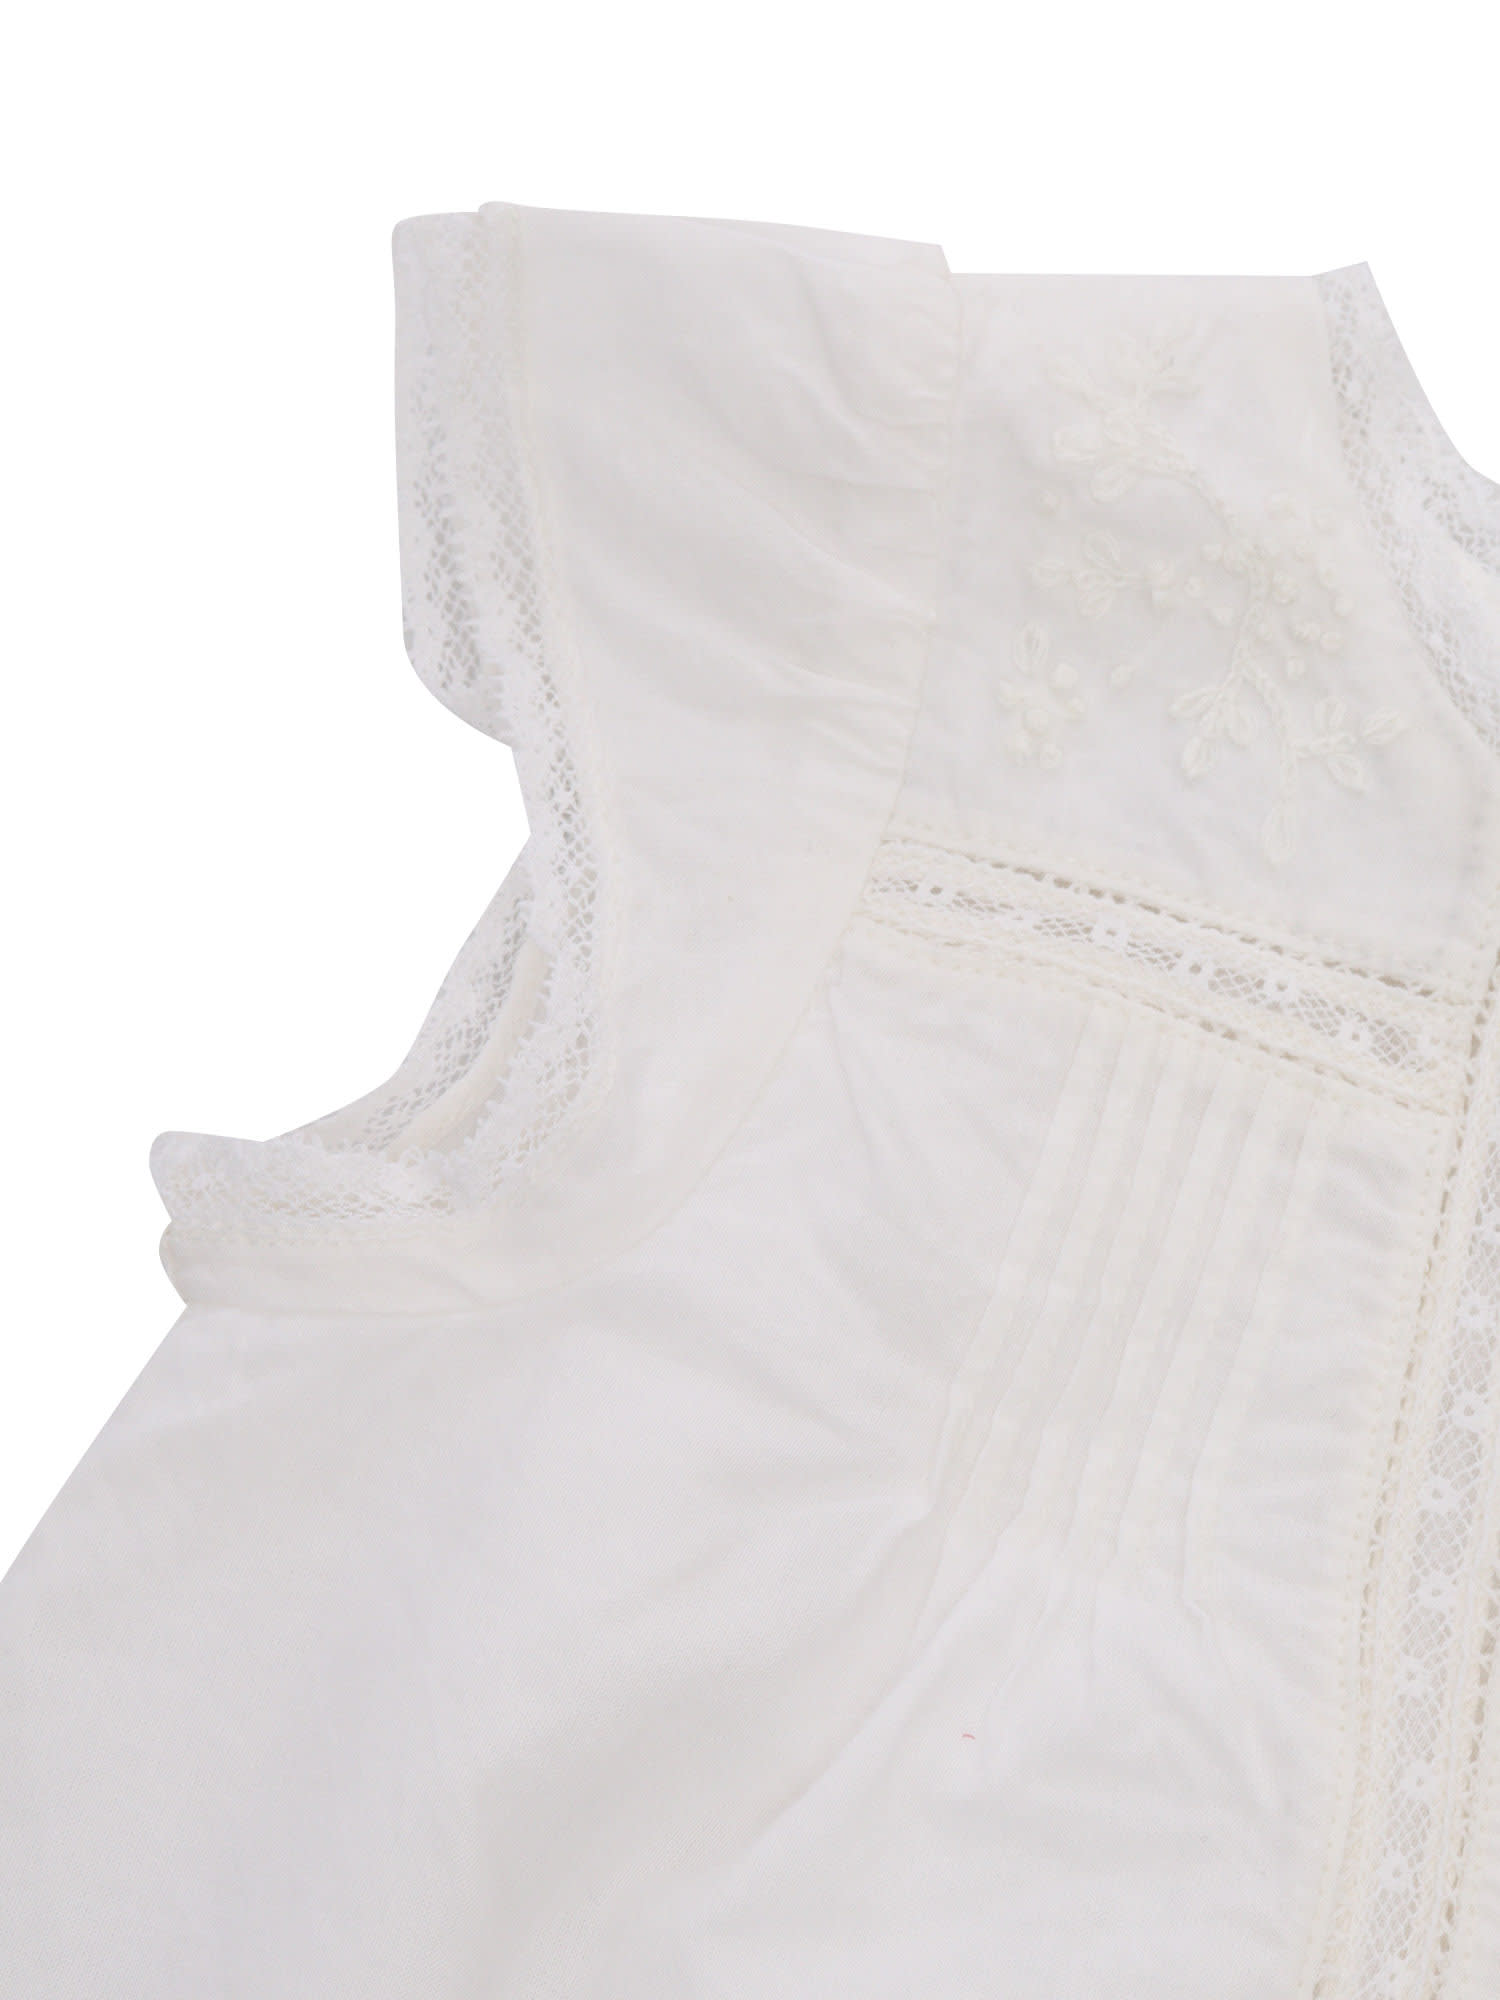 Shop Bonpoint White Angeli Dress